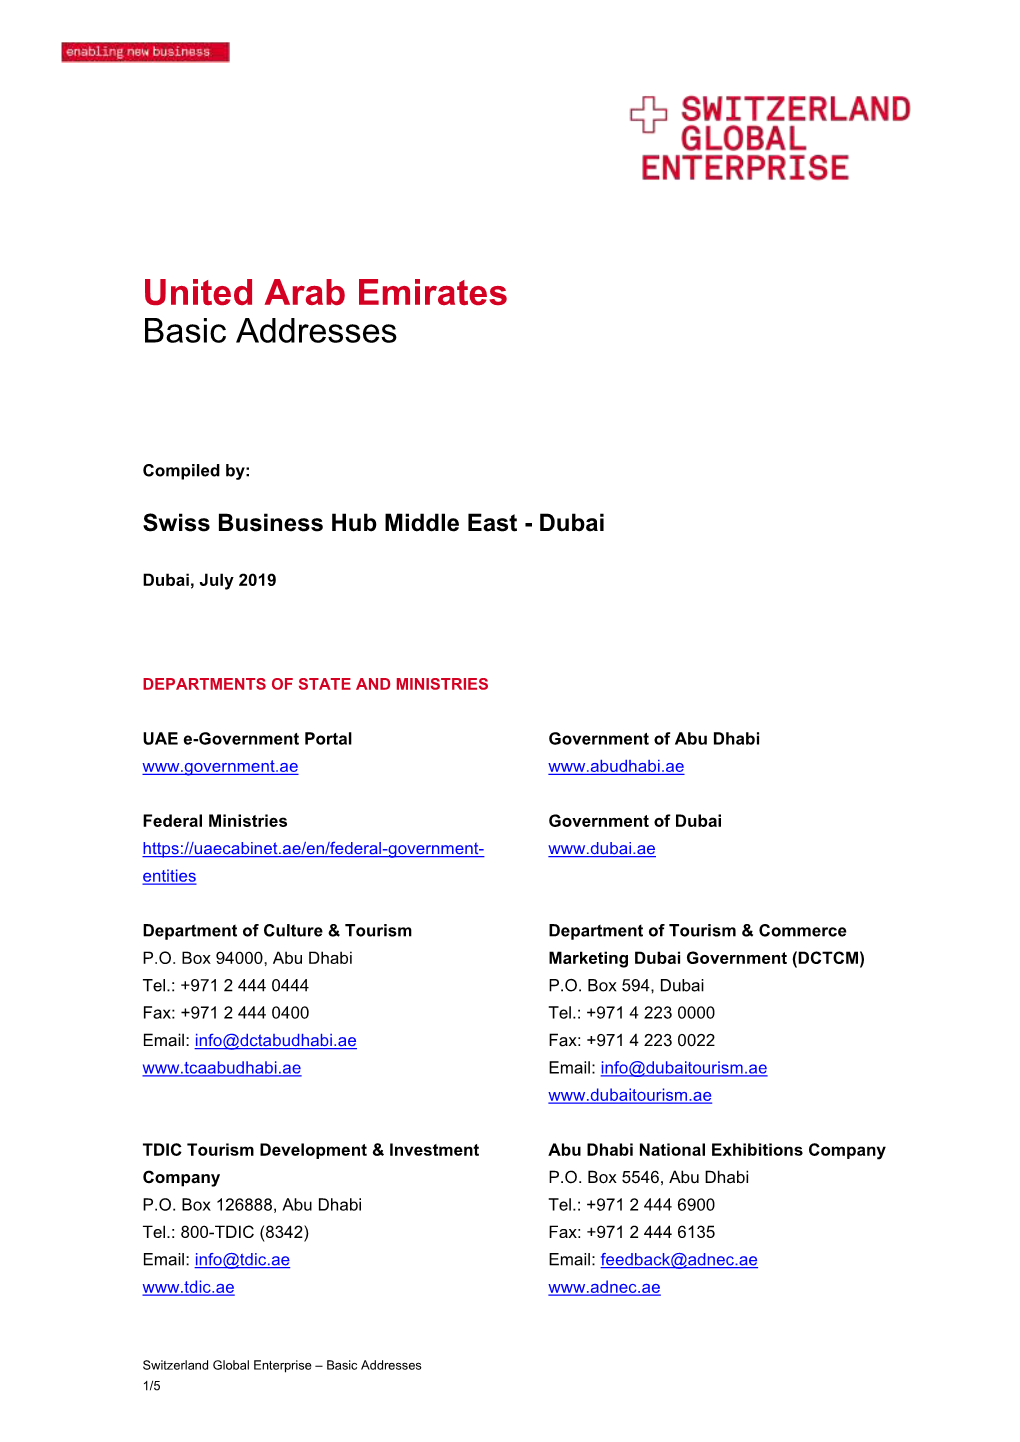 United Arab Emirates Basic Addresses